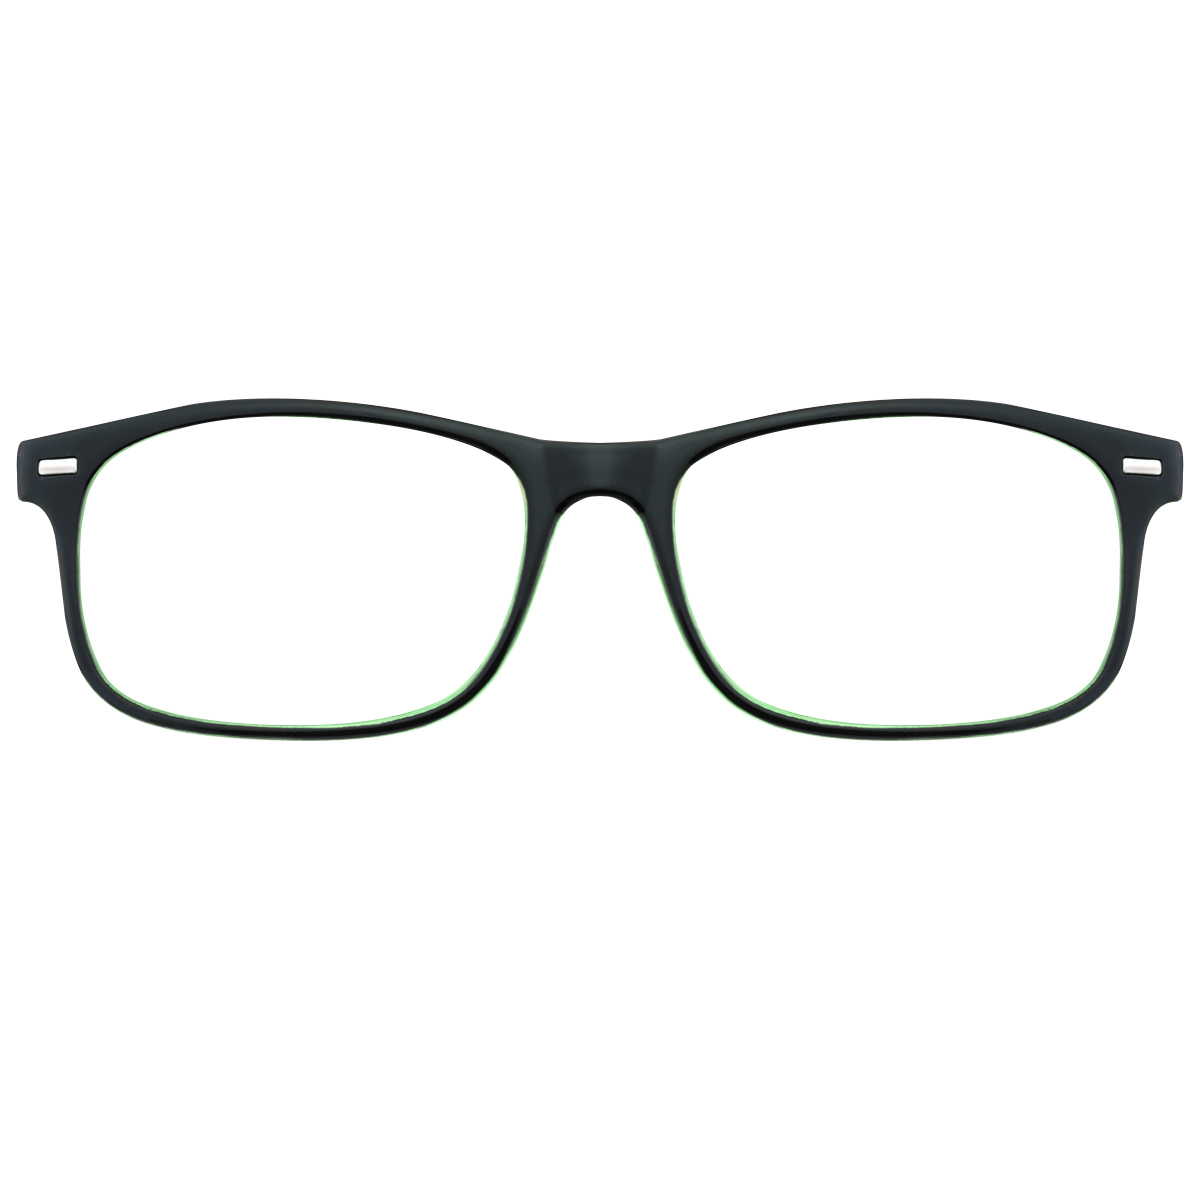 Fashion Rectangle Green  Reading Glasses for Women & Men